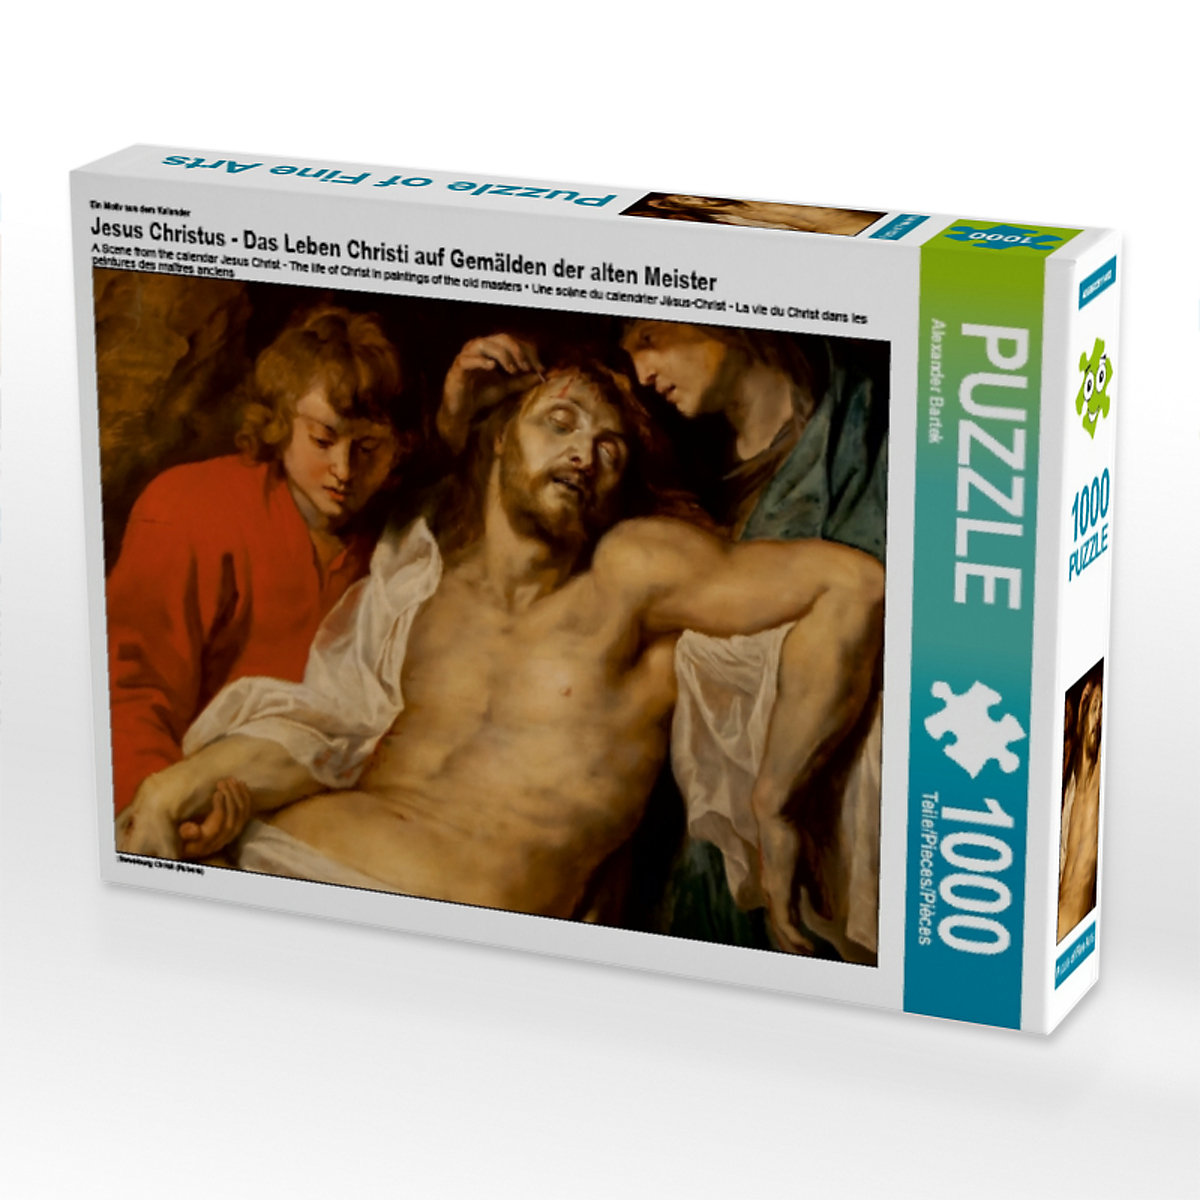 CALVENDO® Puzzle CALVENDO Puzzle Jesus Christus Das Leben Christi auf Gemälden der alten Meister 1000 Teile Foto-Puzzle für glückliche Stunden